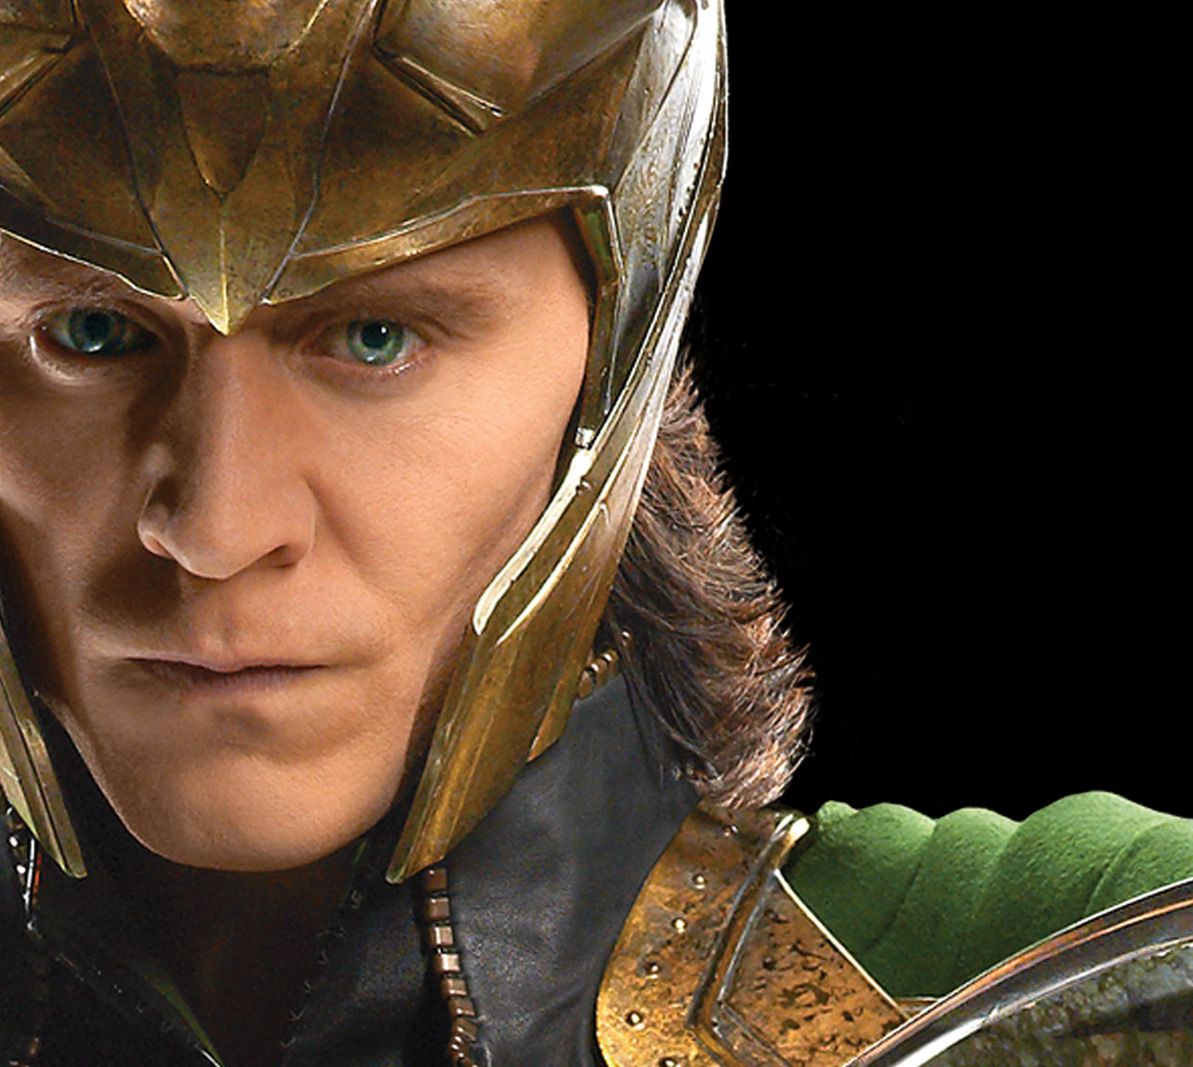 Loki character close-up